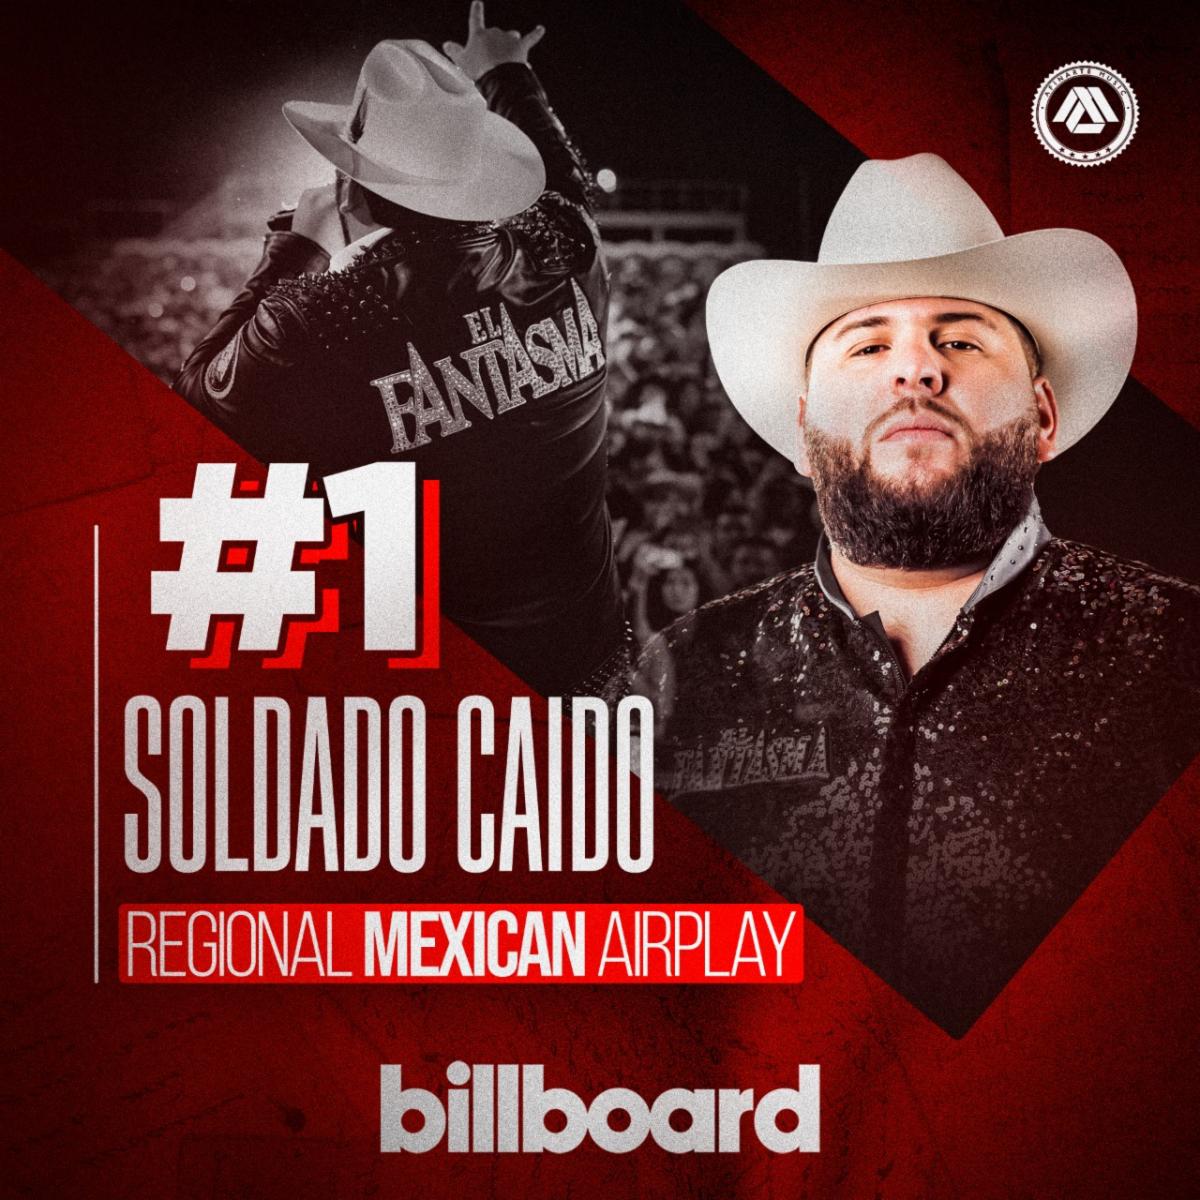 EL FANTASMA logra colocarse #1 en la lista “Regional Mexican Airplay”